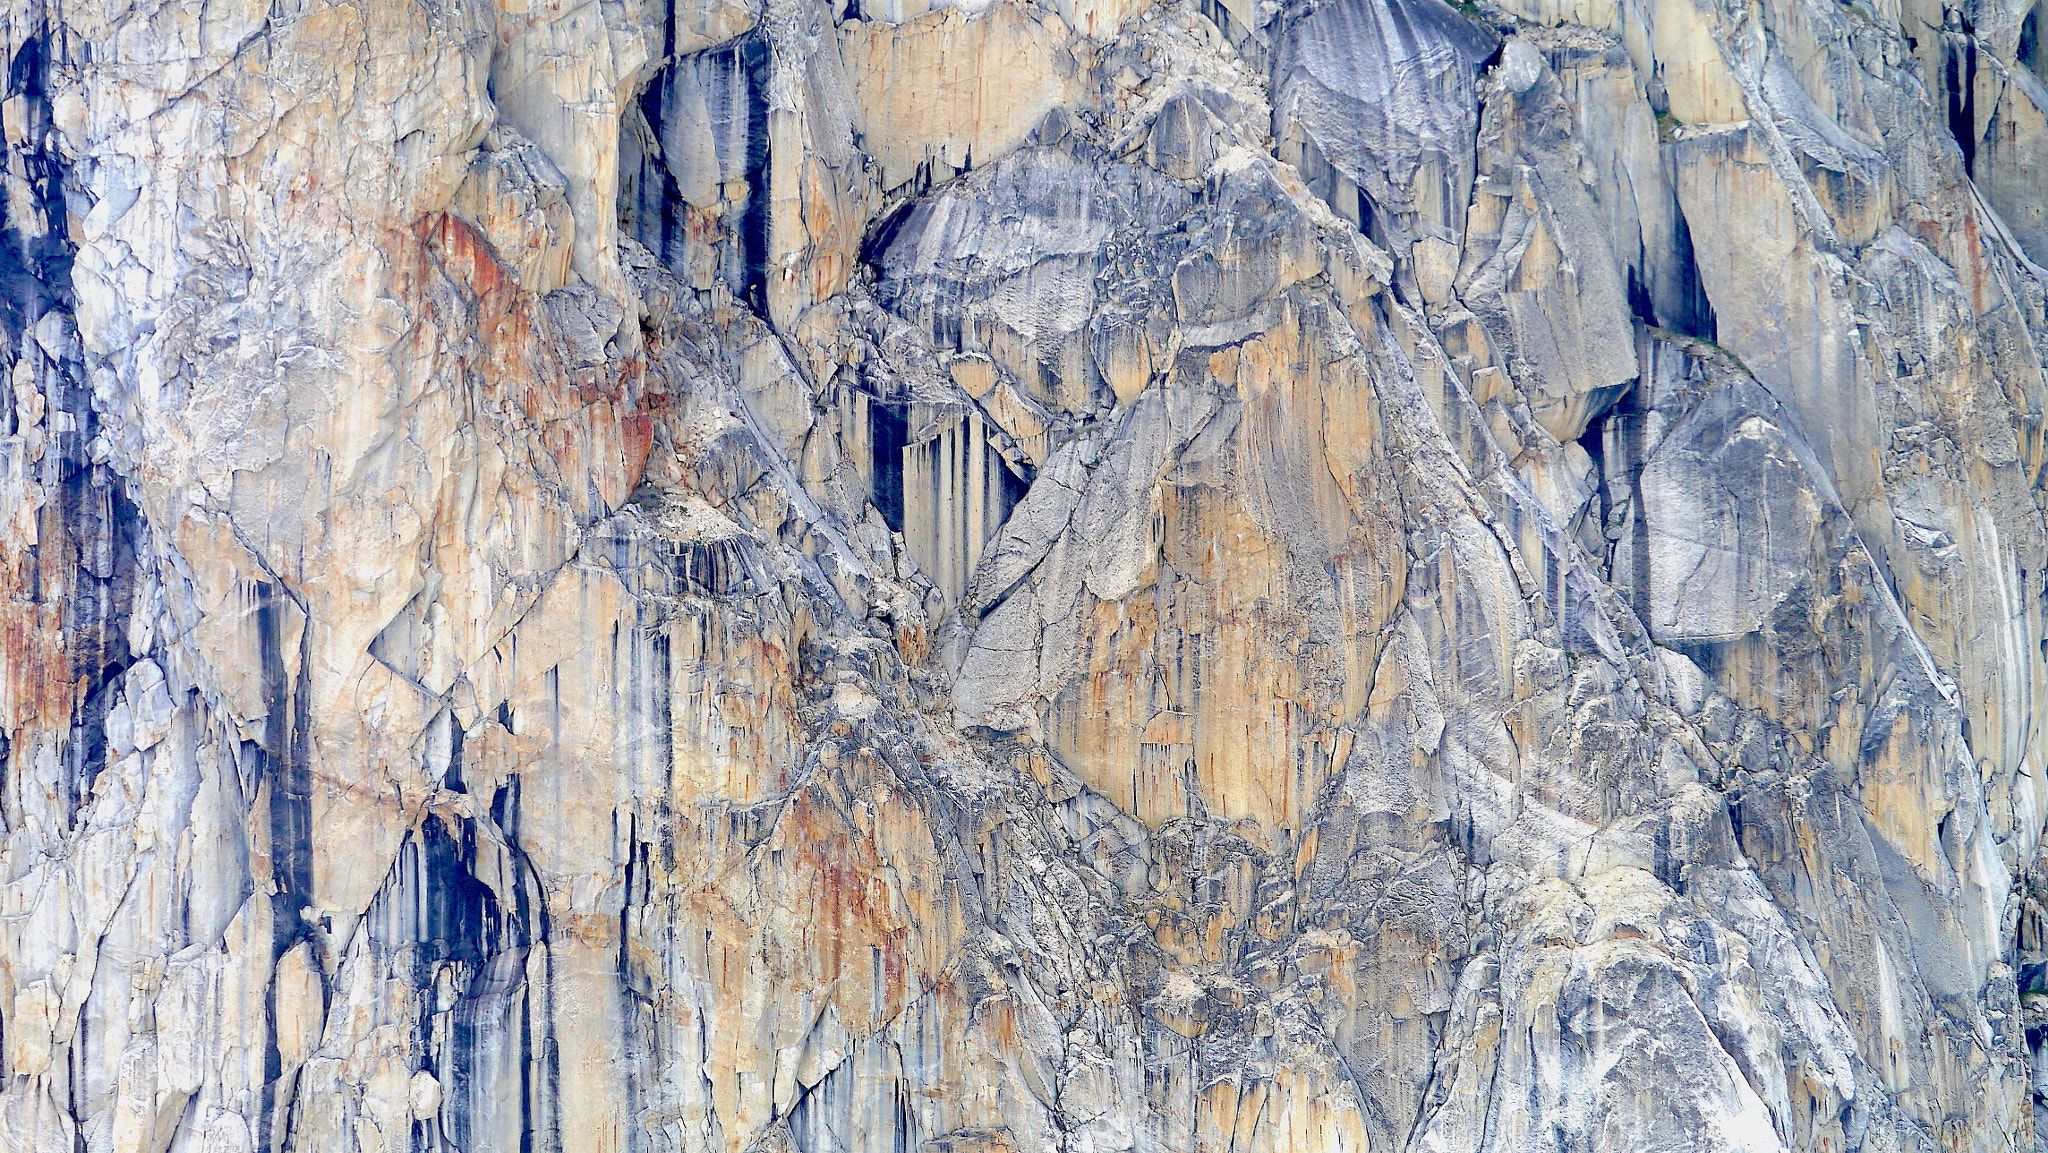 Panasonic Lumix DMC-GX1 sample photo. Denali canyon wall...stunning patterns photography